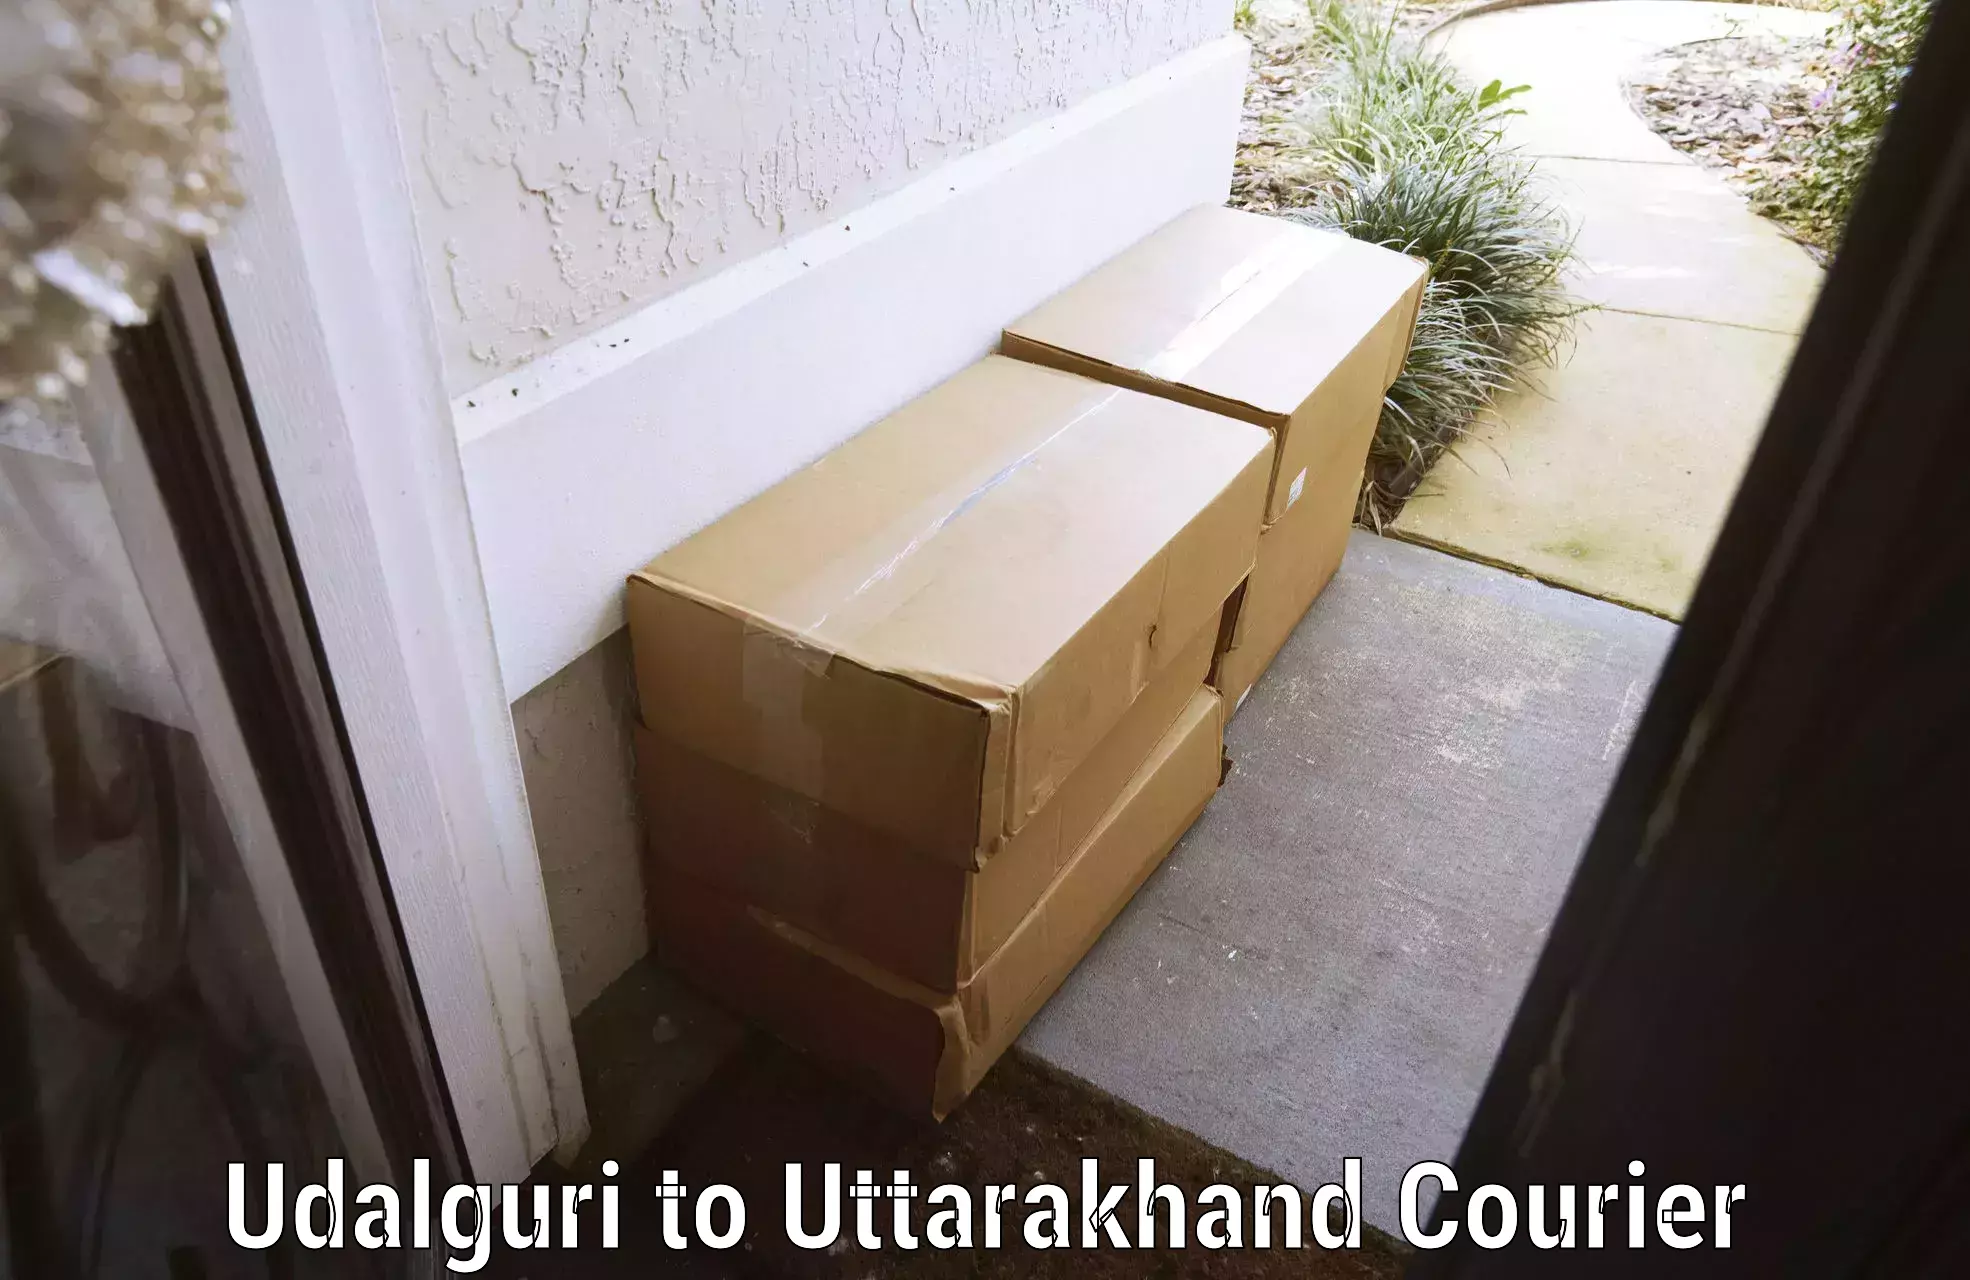 Luggage shipment processing Udalguri to Dwarahat